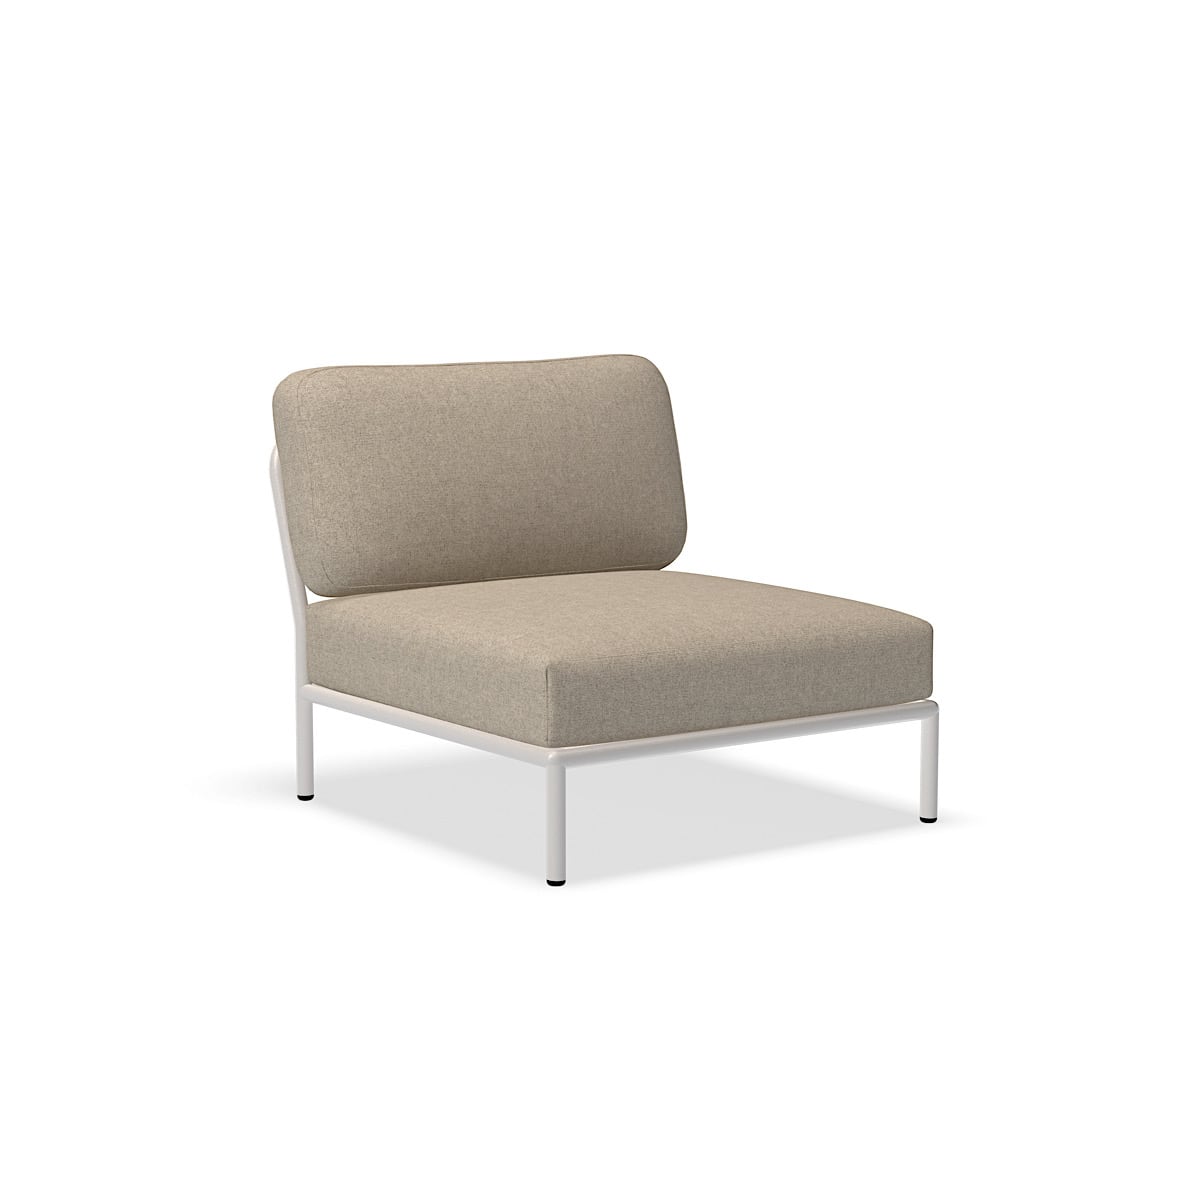 الكرسي - 12205-9543 - كرسي ، ورق البردي (HERITAGE) ، هيكل أبيض